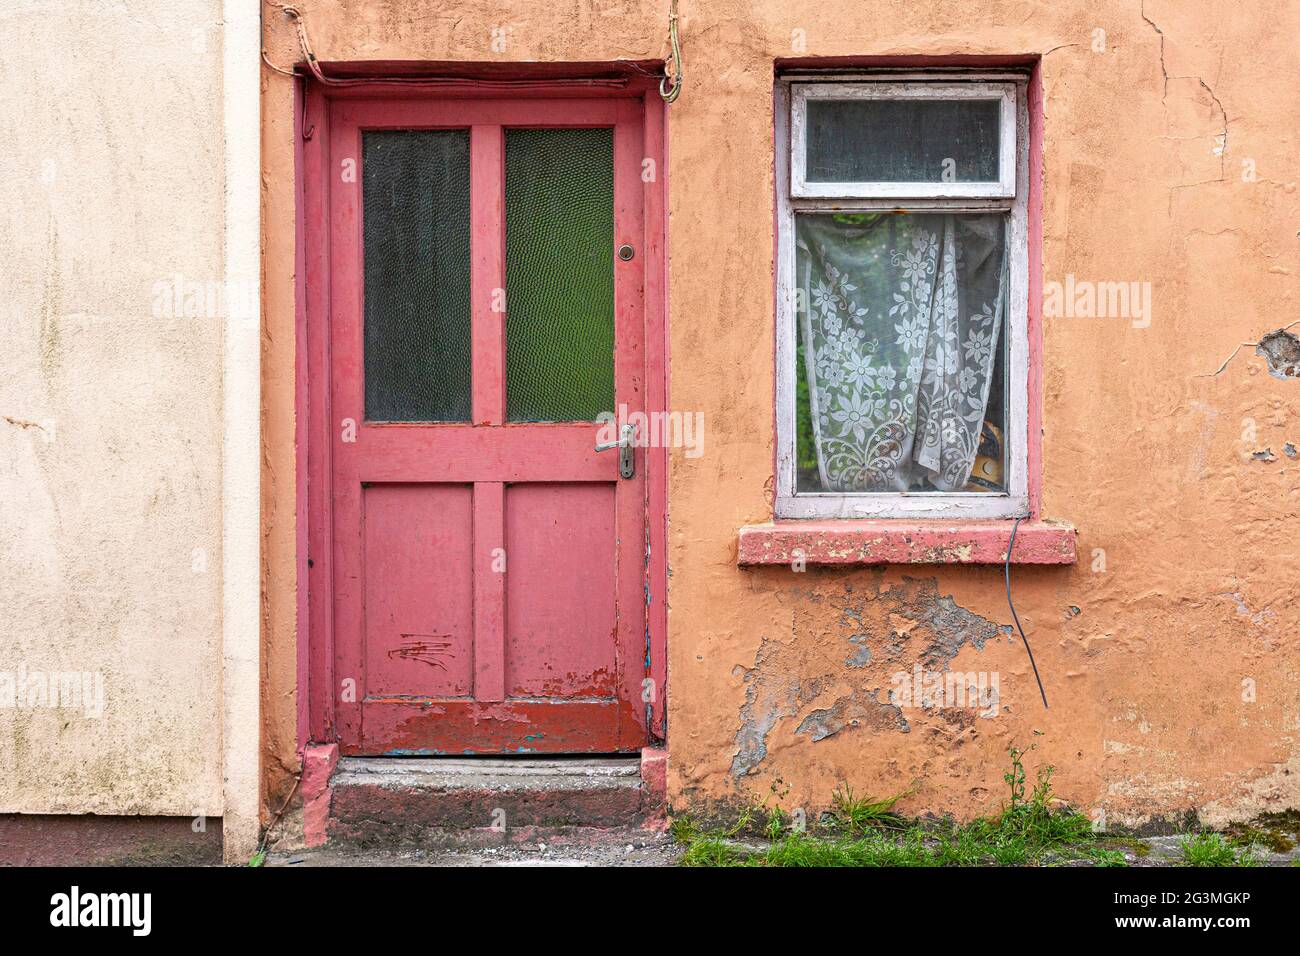 Abandoned houses in disrepair, Killaloe, County Clare Ireland Stock Photo